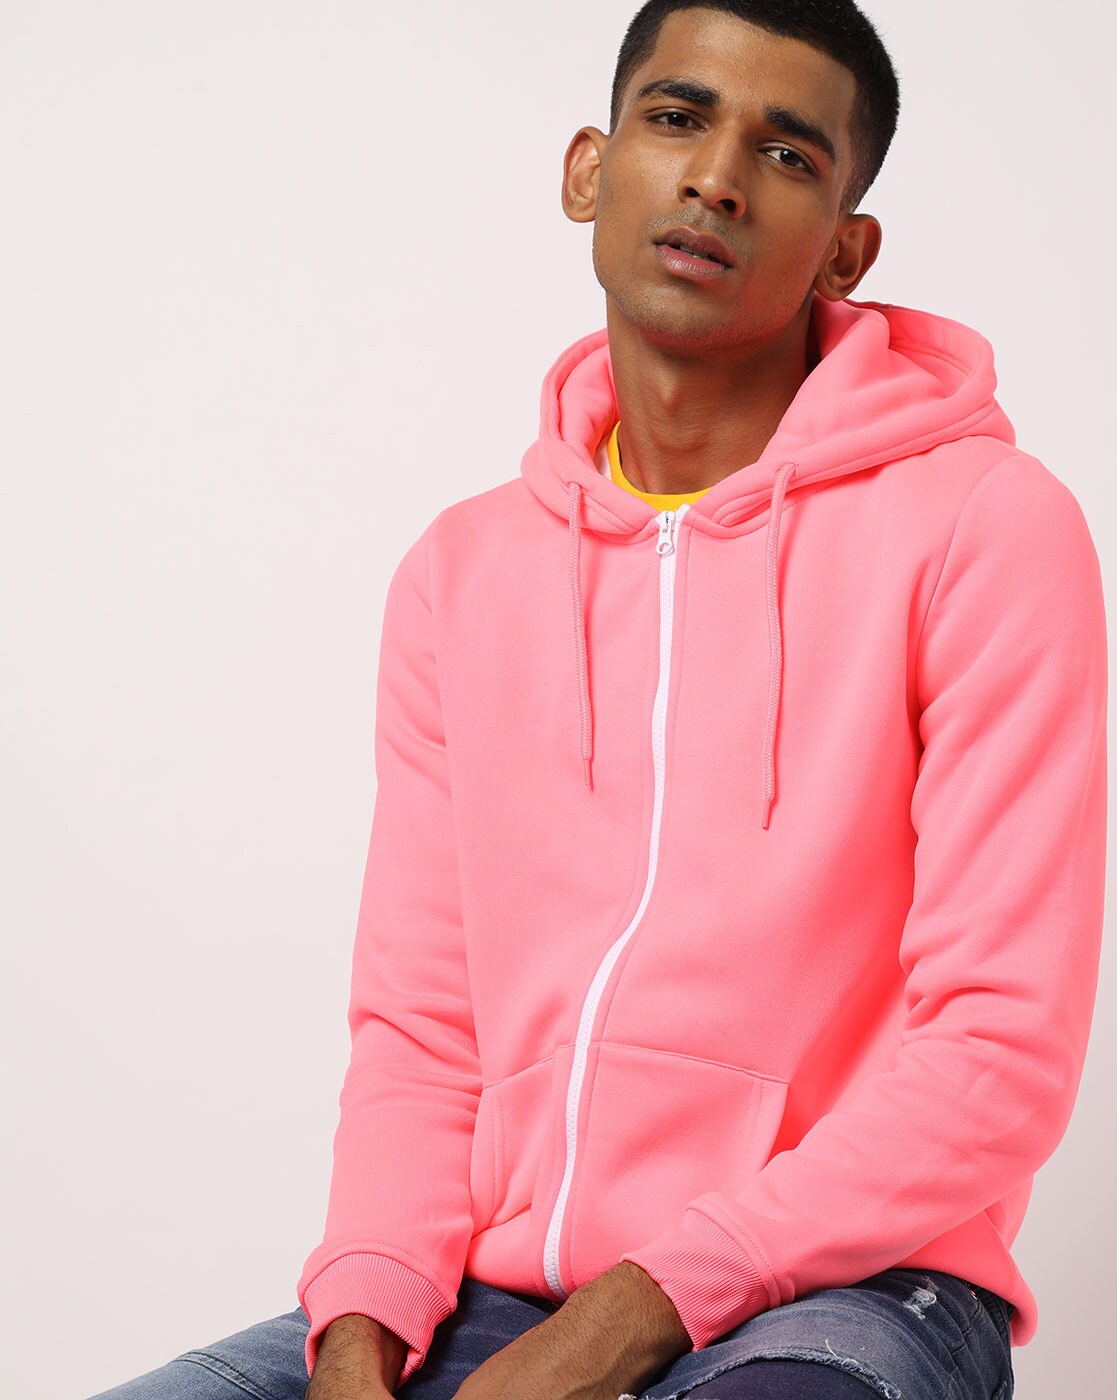 mens pink zip up hoodie